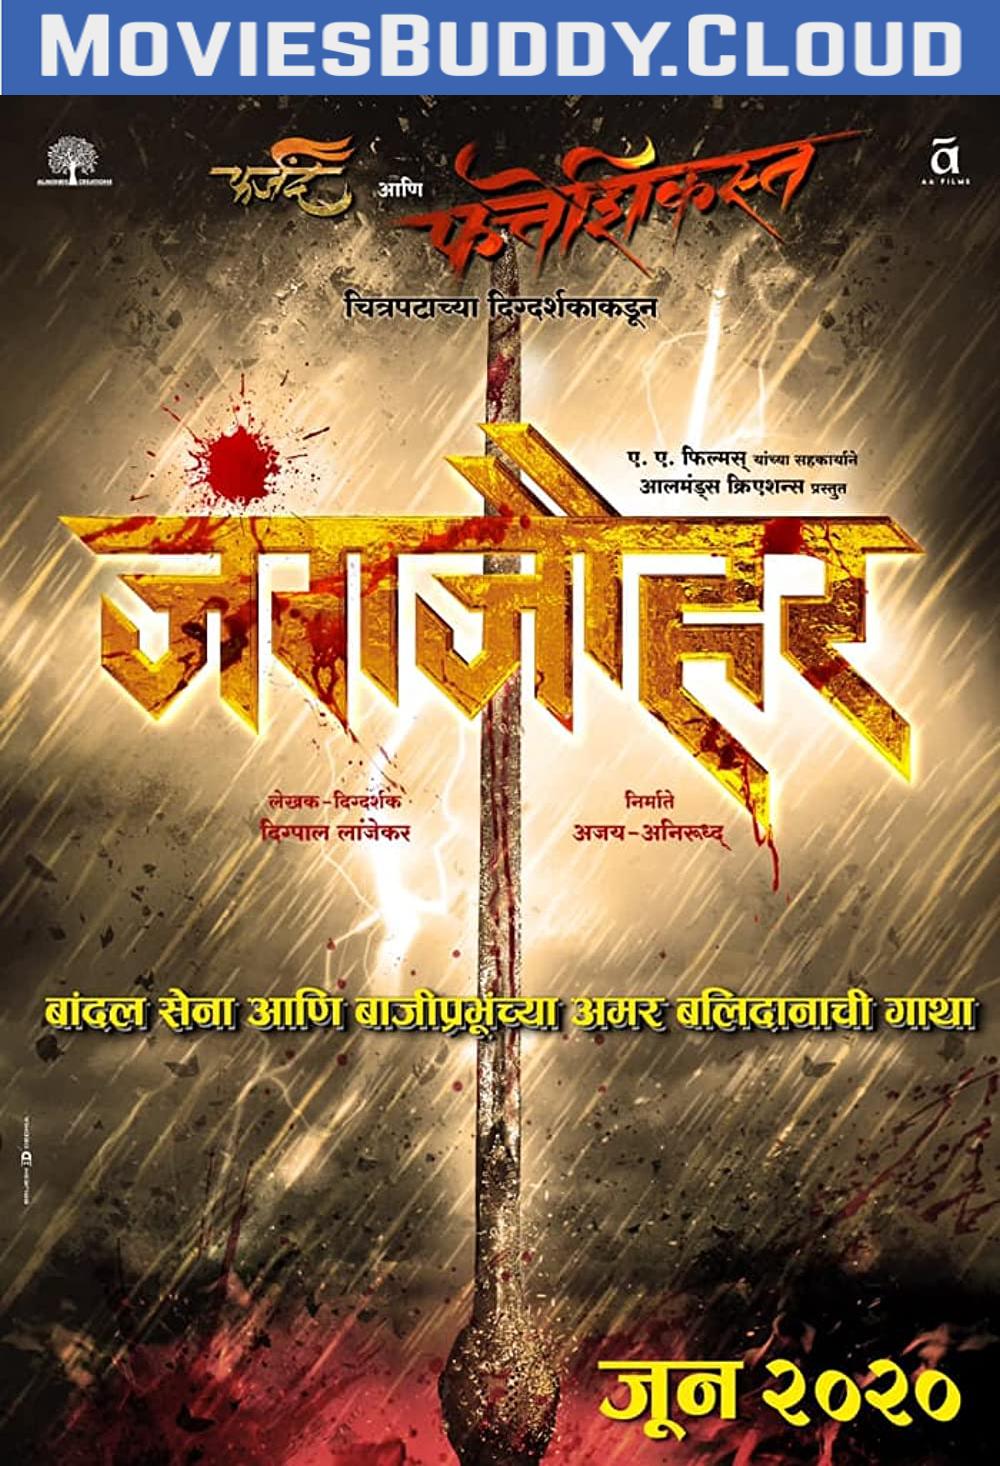 Free Download Pawankhind Full Movie